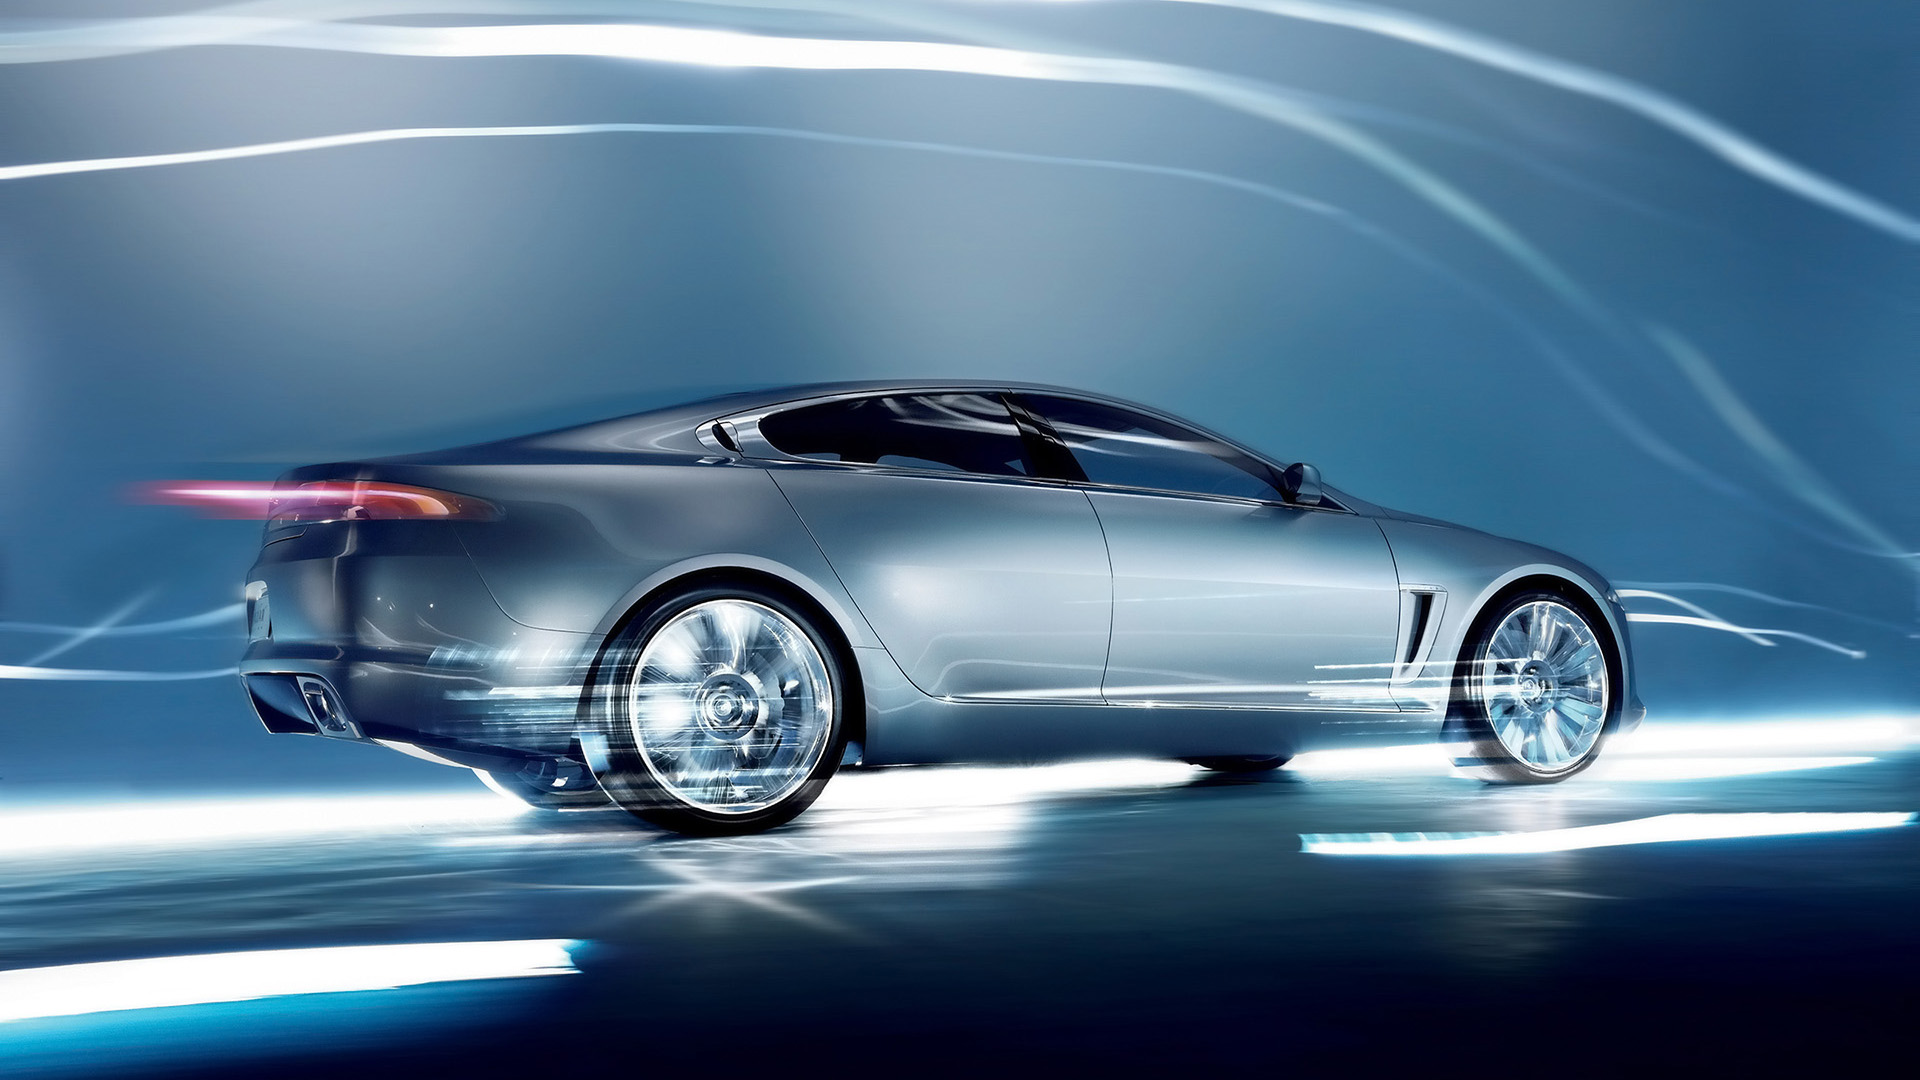  2007 Jaguar C-XF Concept Wallpaper.